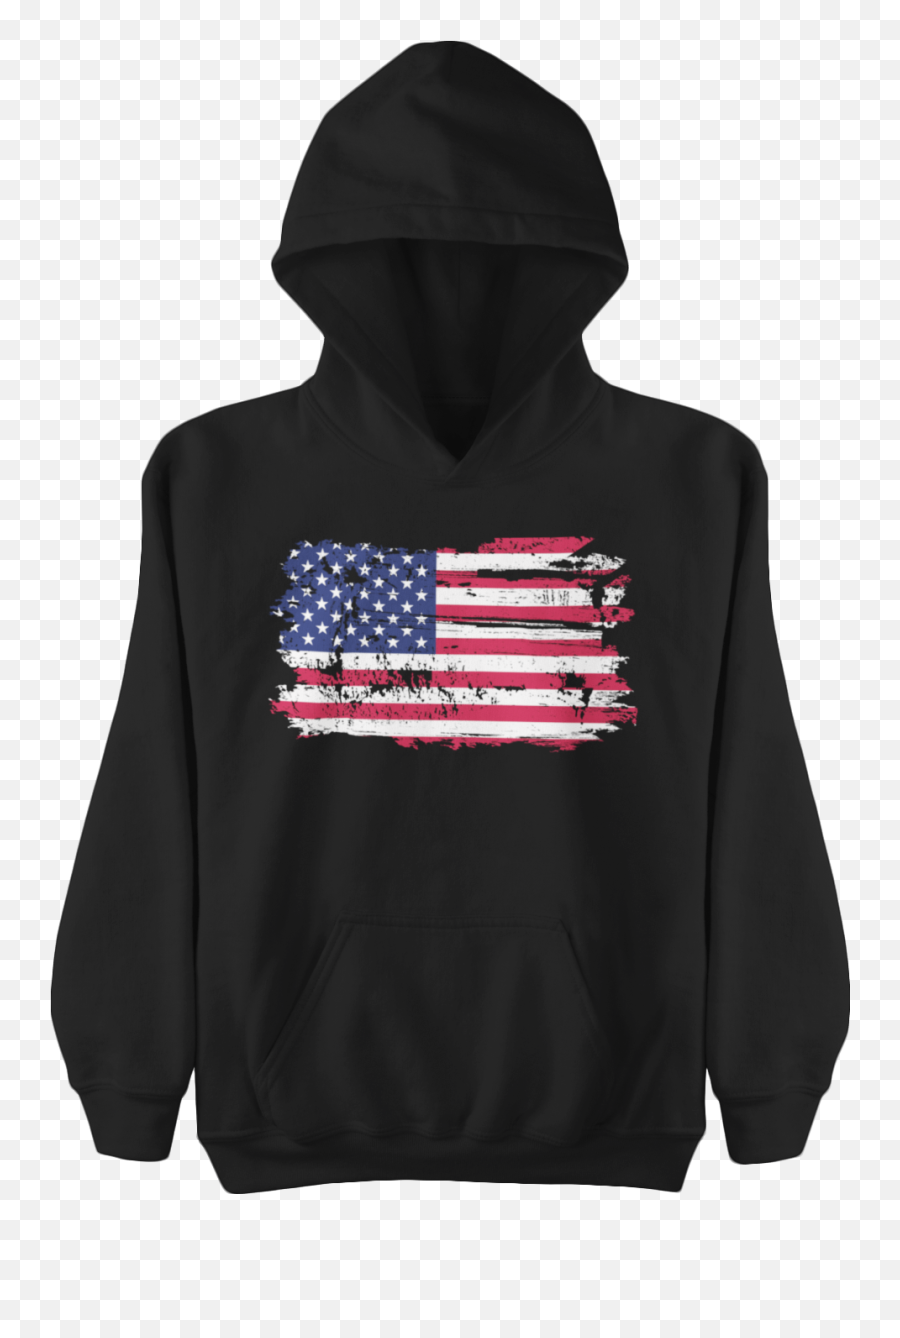 Distressed American Flag Hoodie - Hoodie Png,Distressed American Flag Png